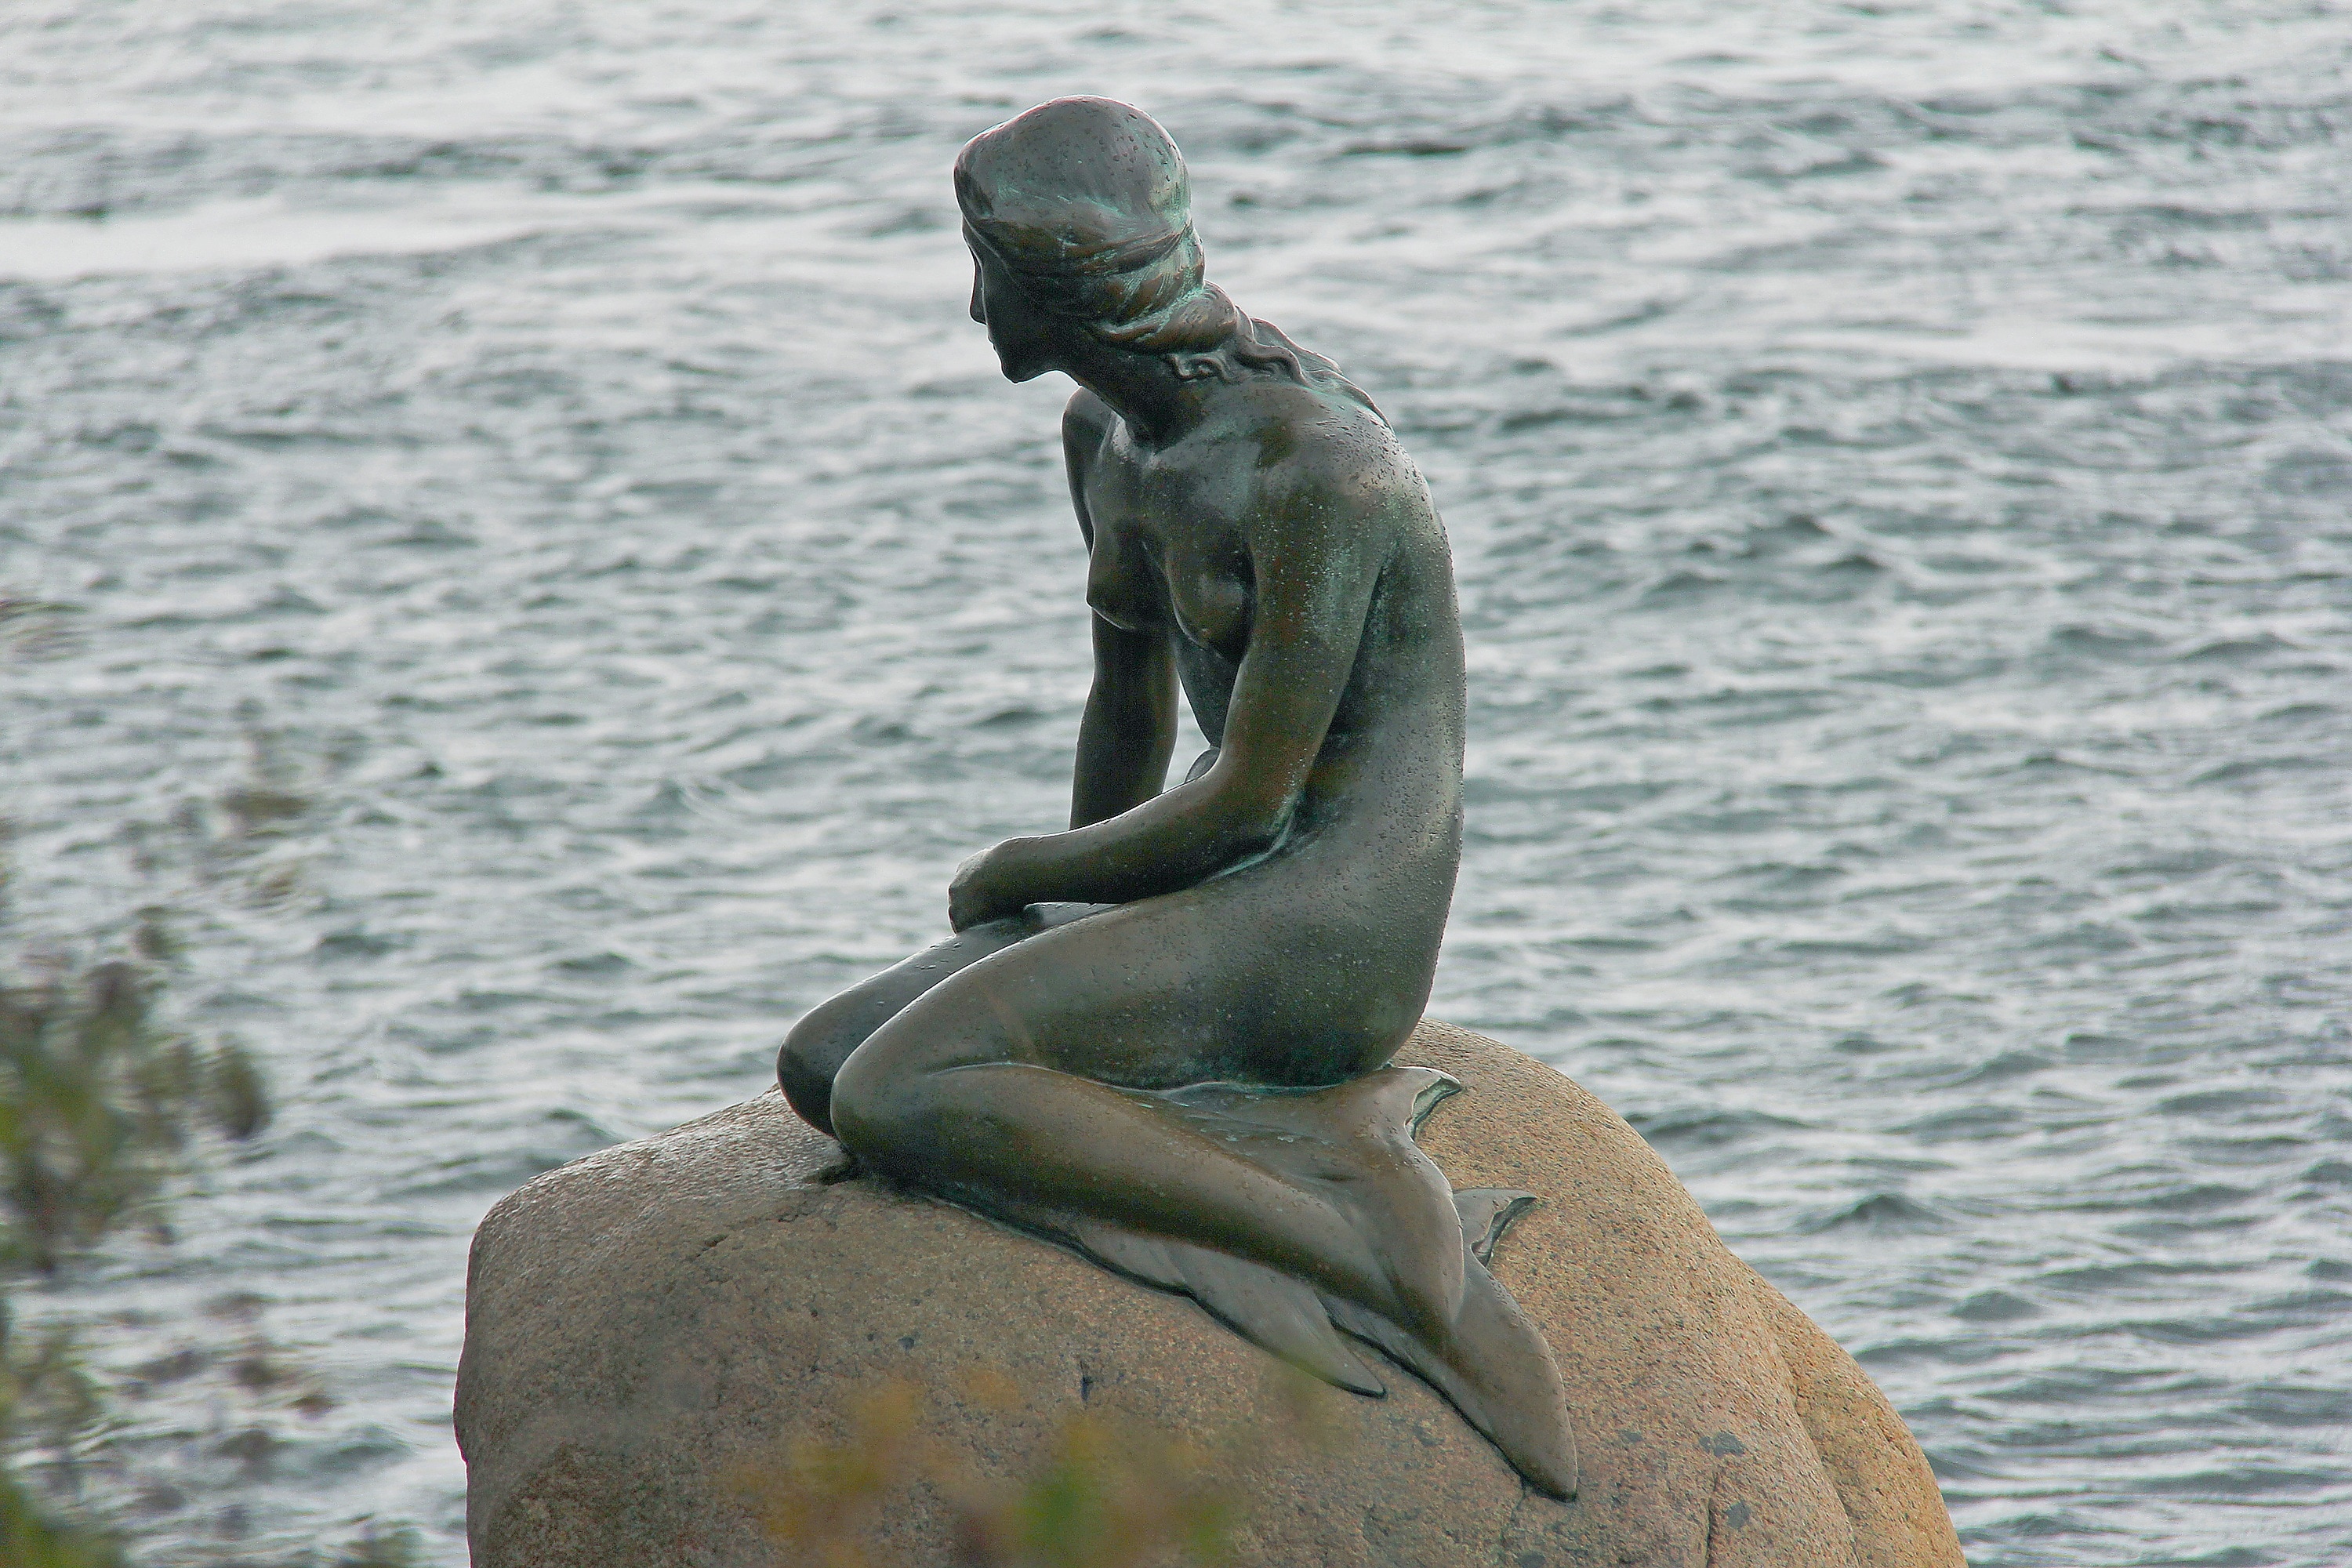 mermaid statue on brown rocks